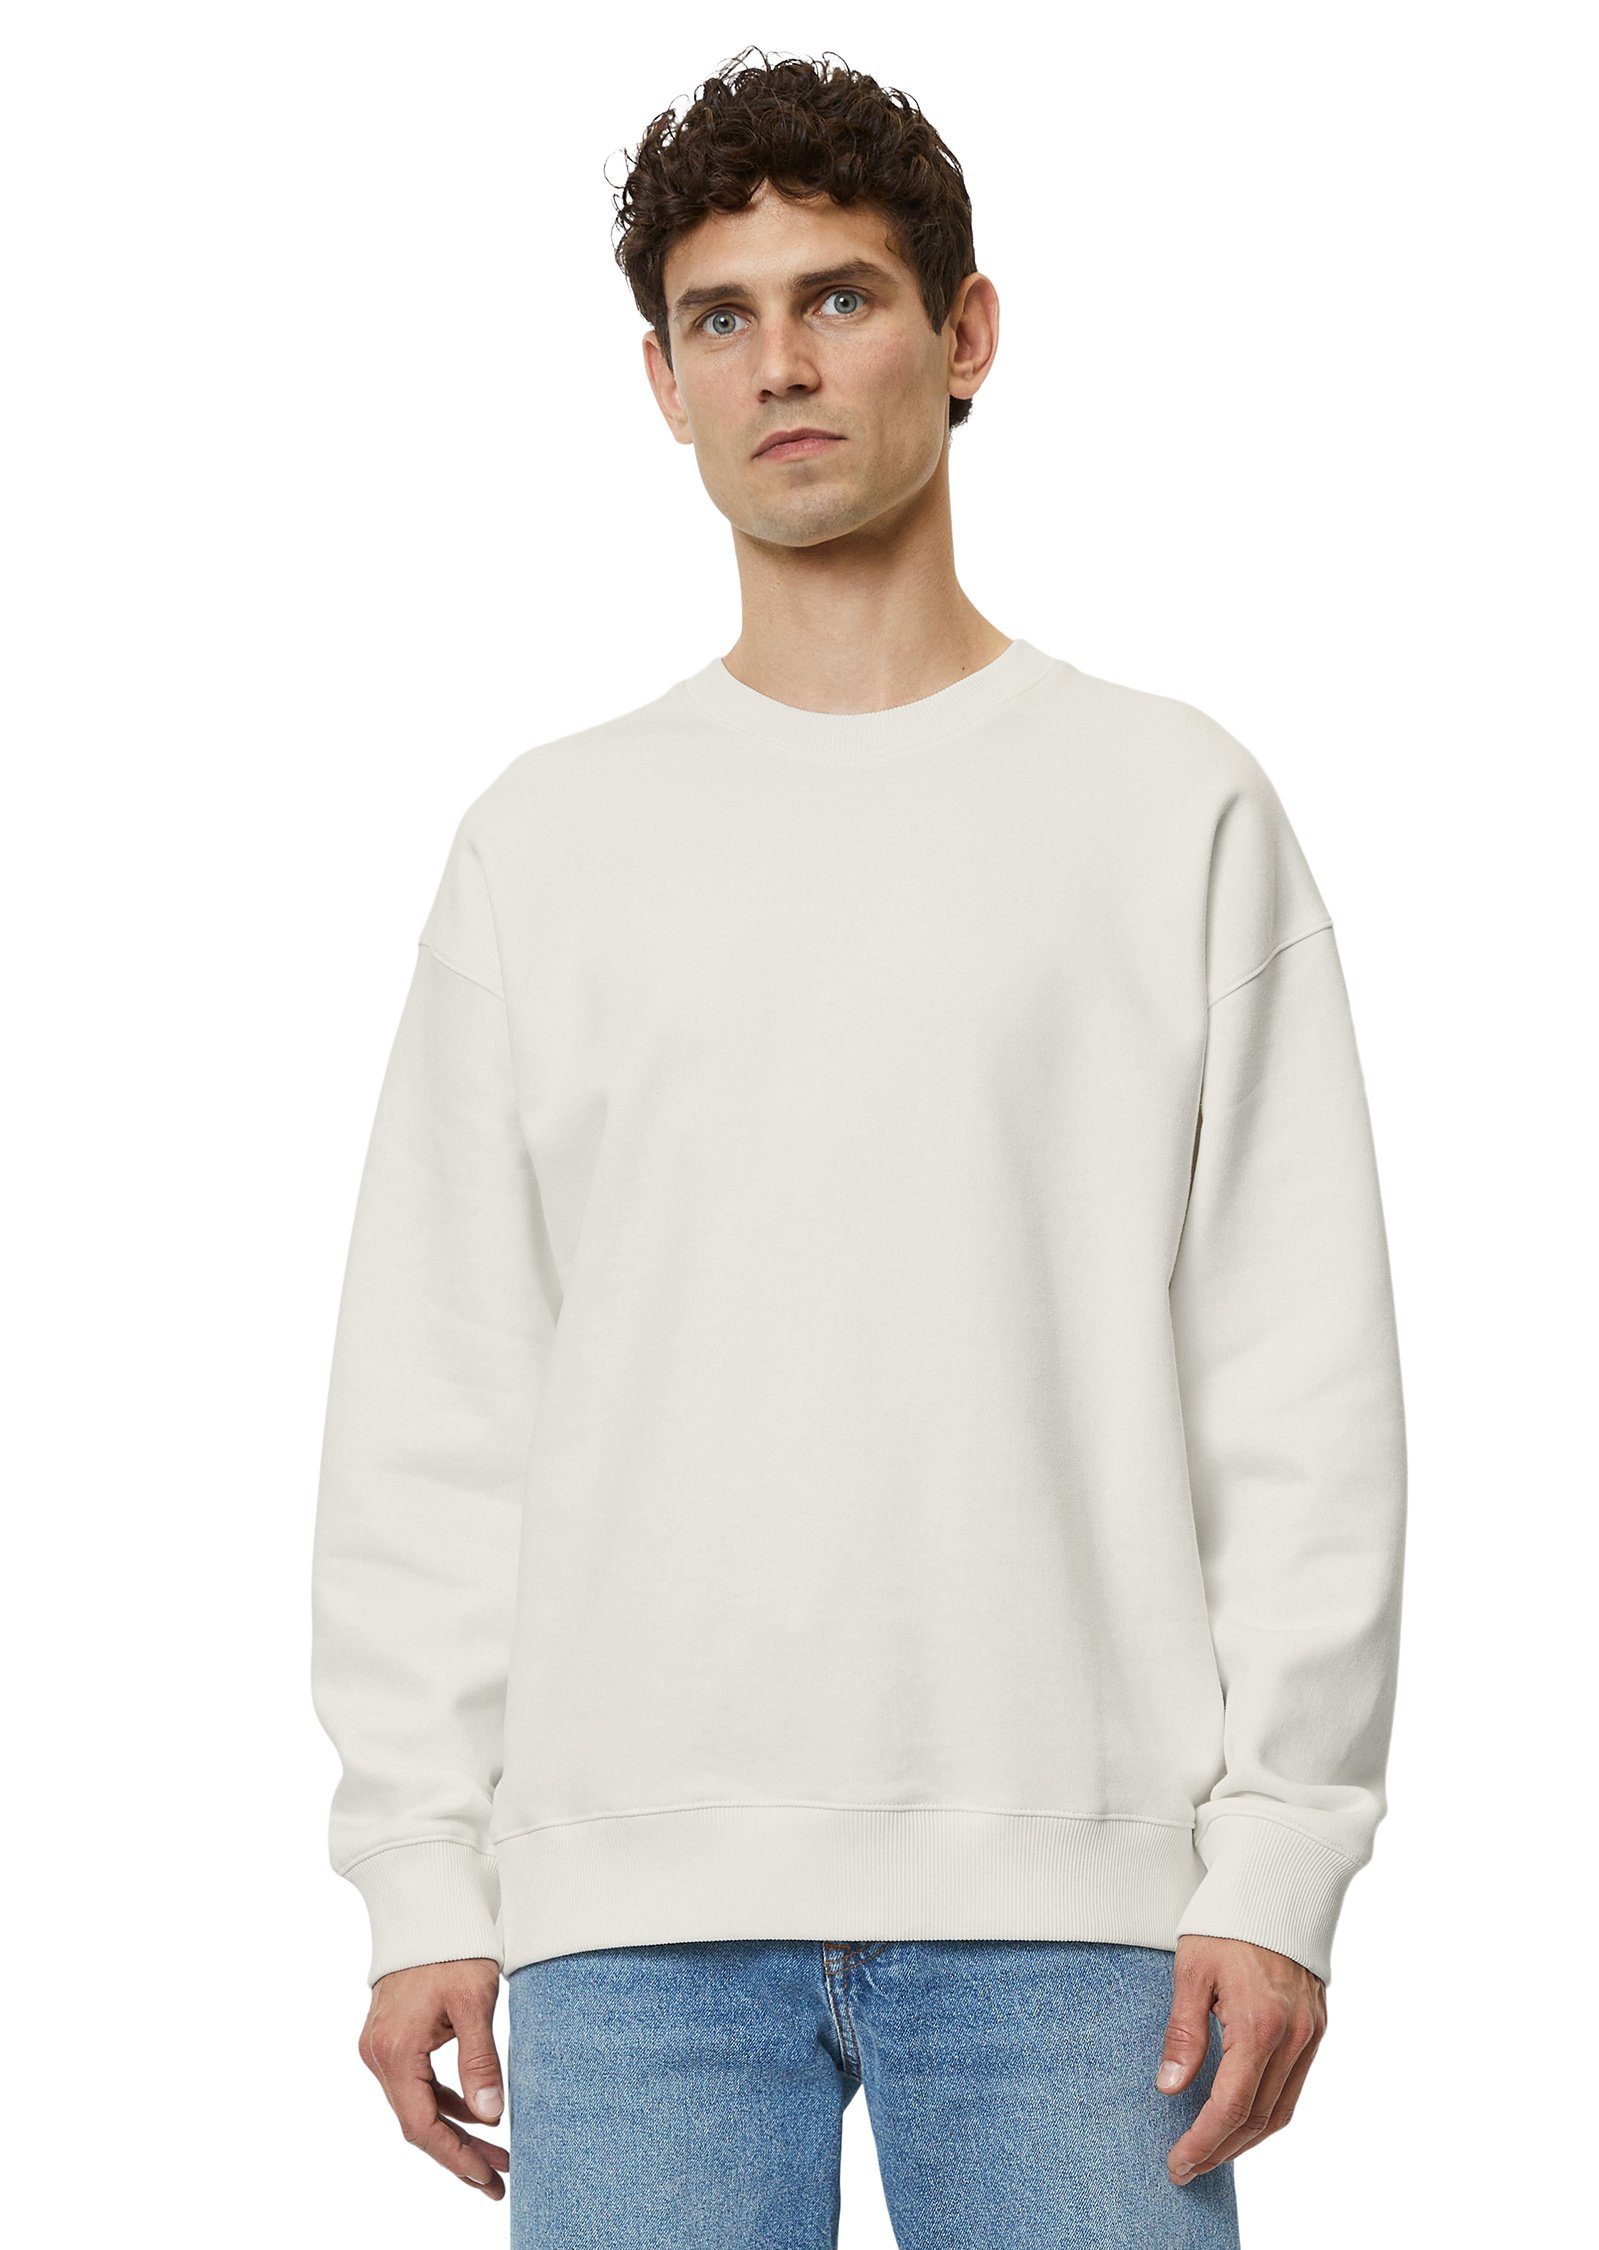 O'Polo Marc Bio-Baumwolle weiß aus reiner Sweatshirt